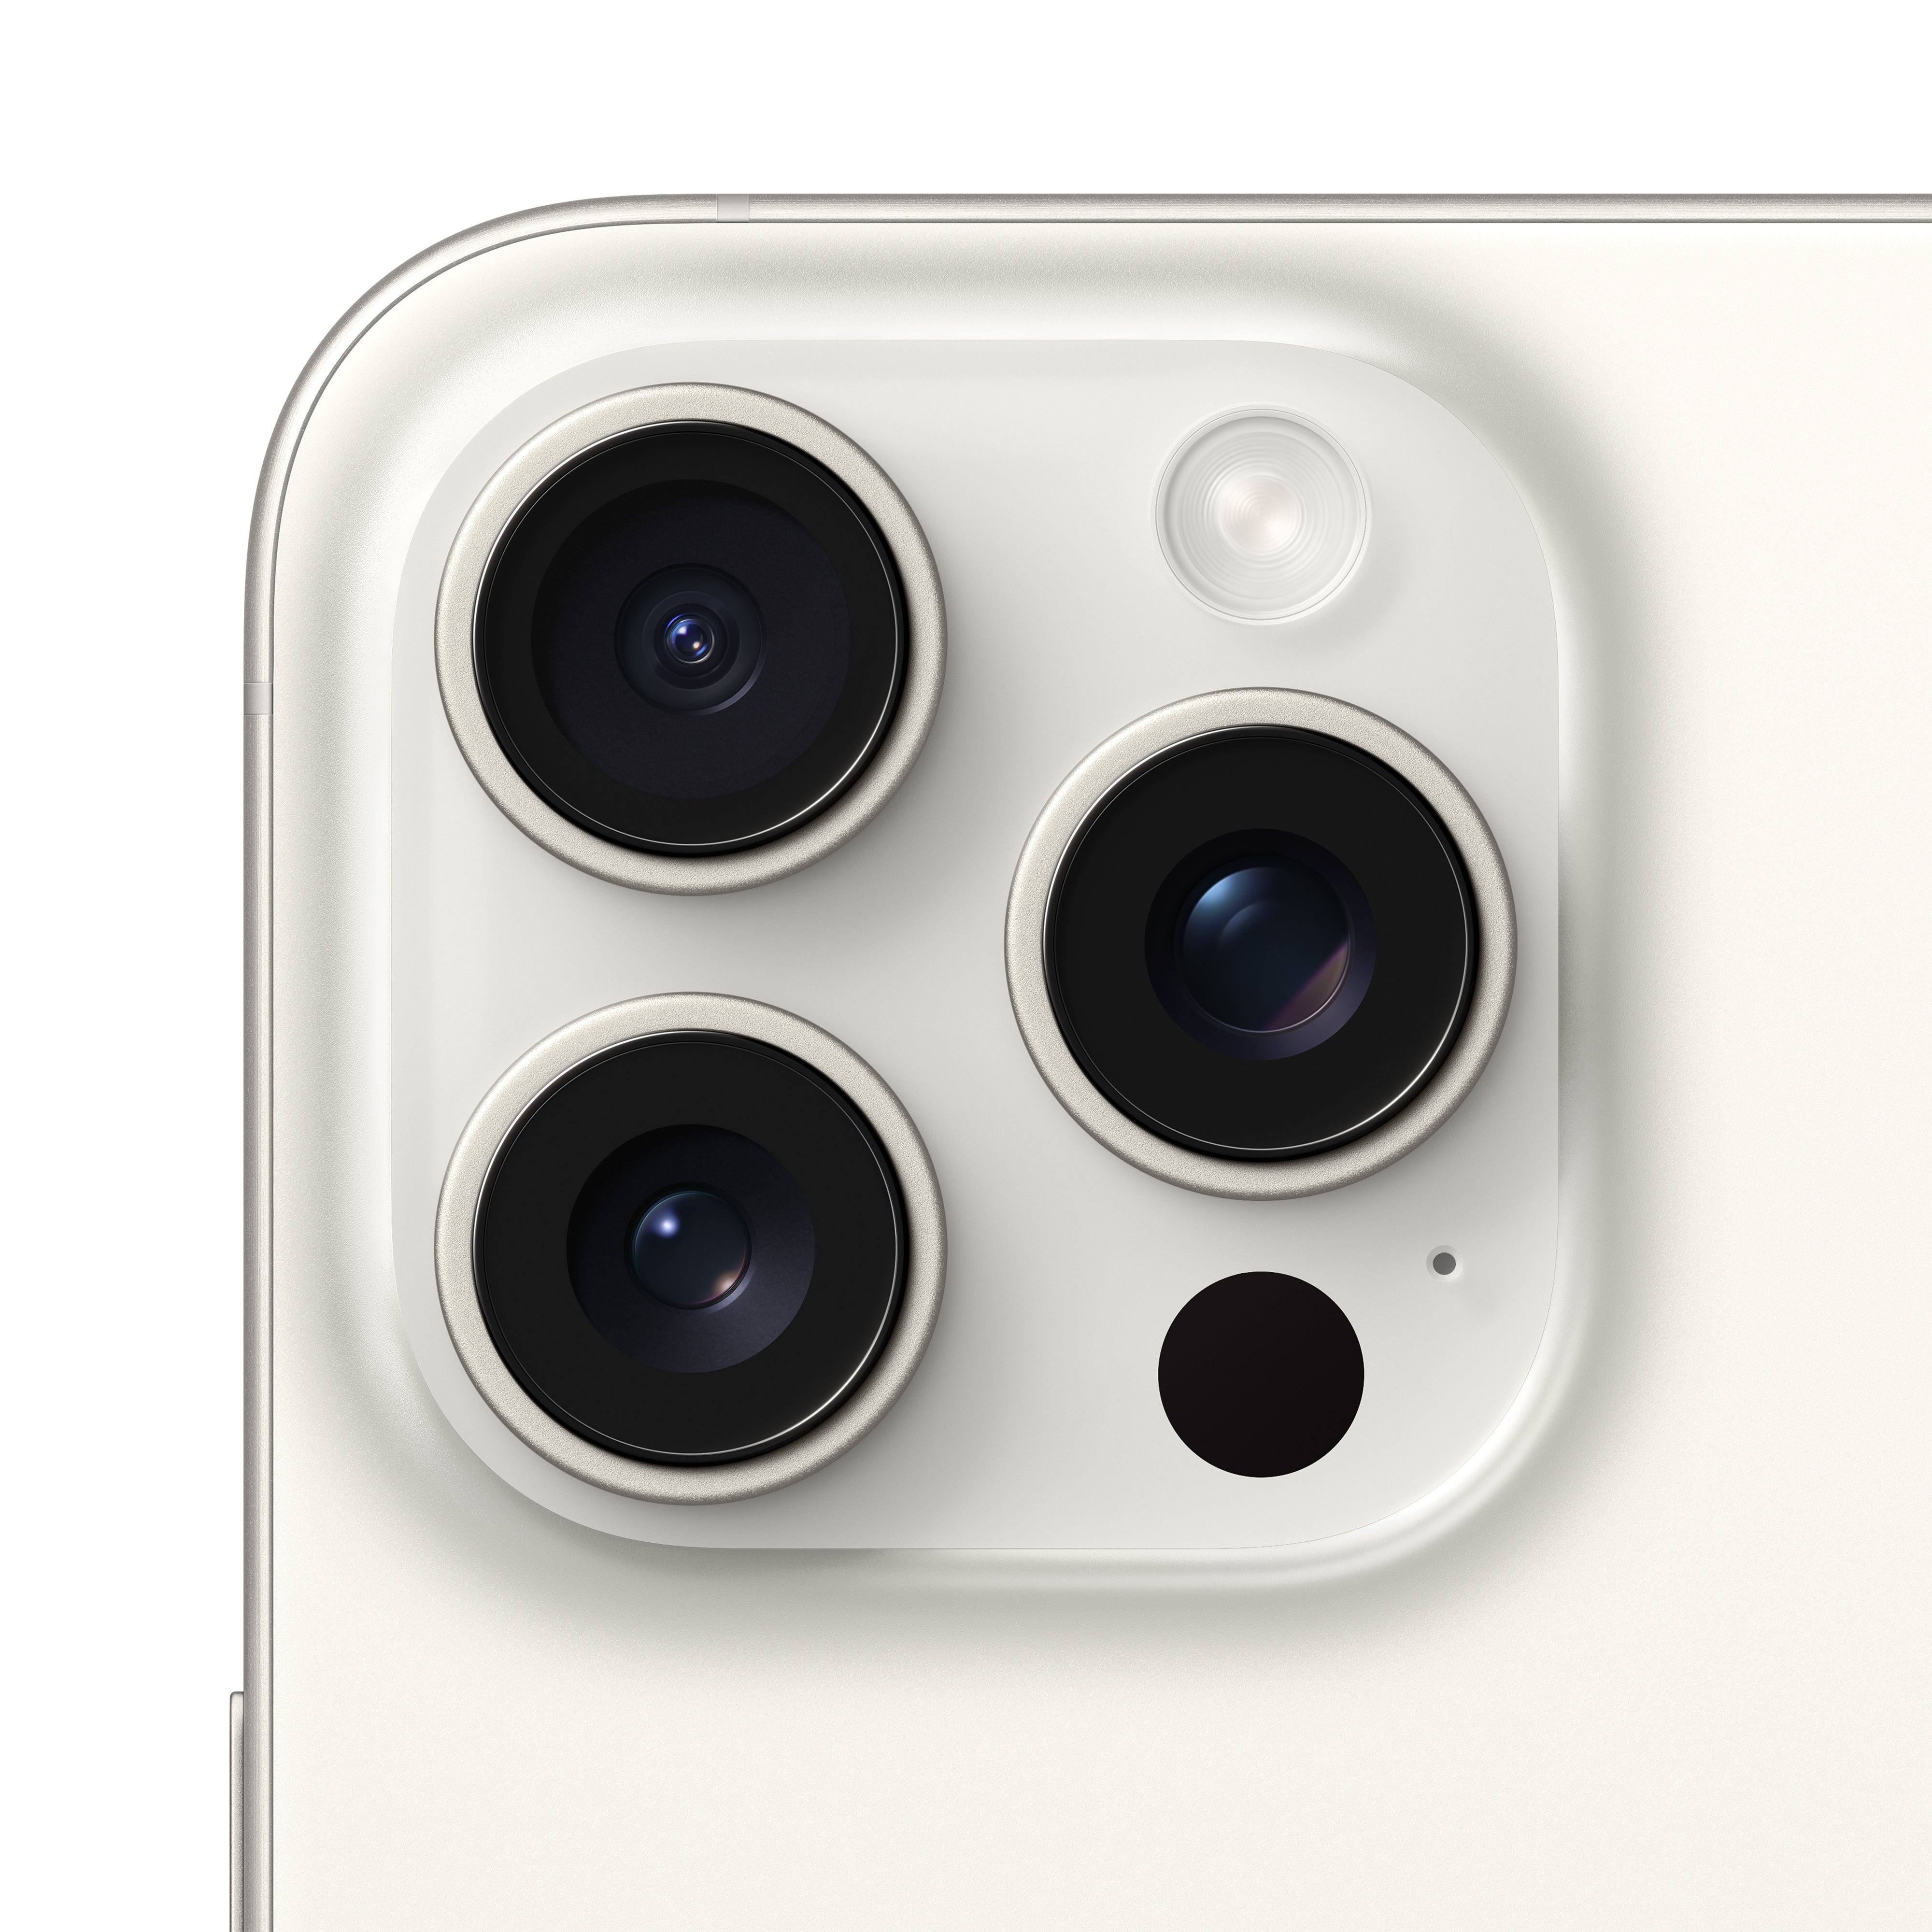 iPhone 15 Pro Max 256GB White Titanium - MU783ZP/A